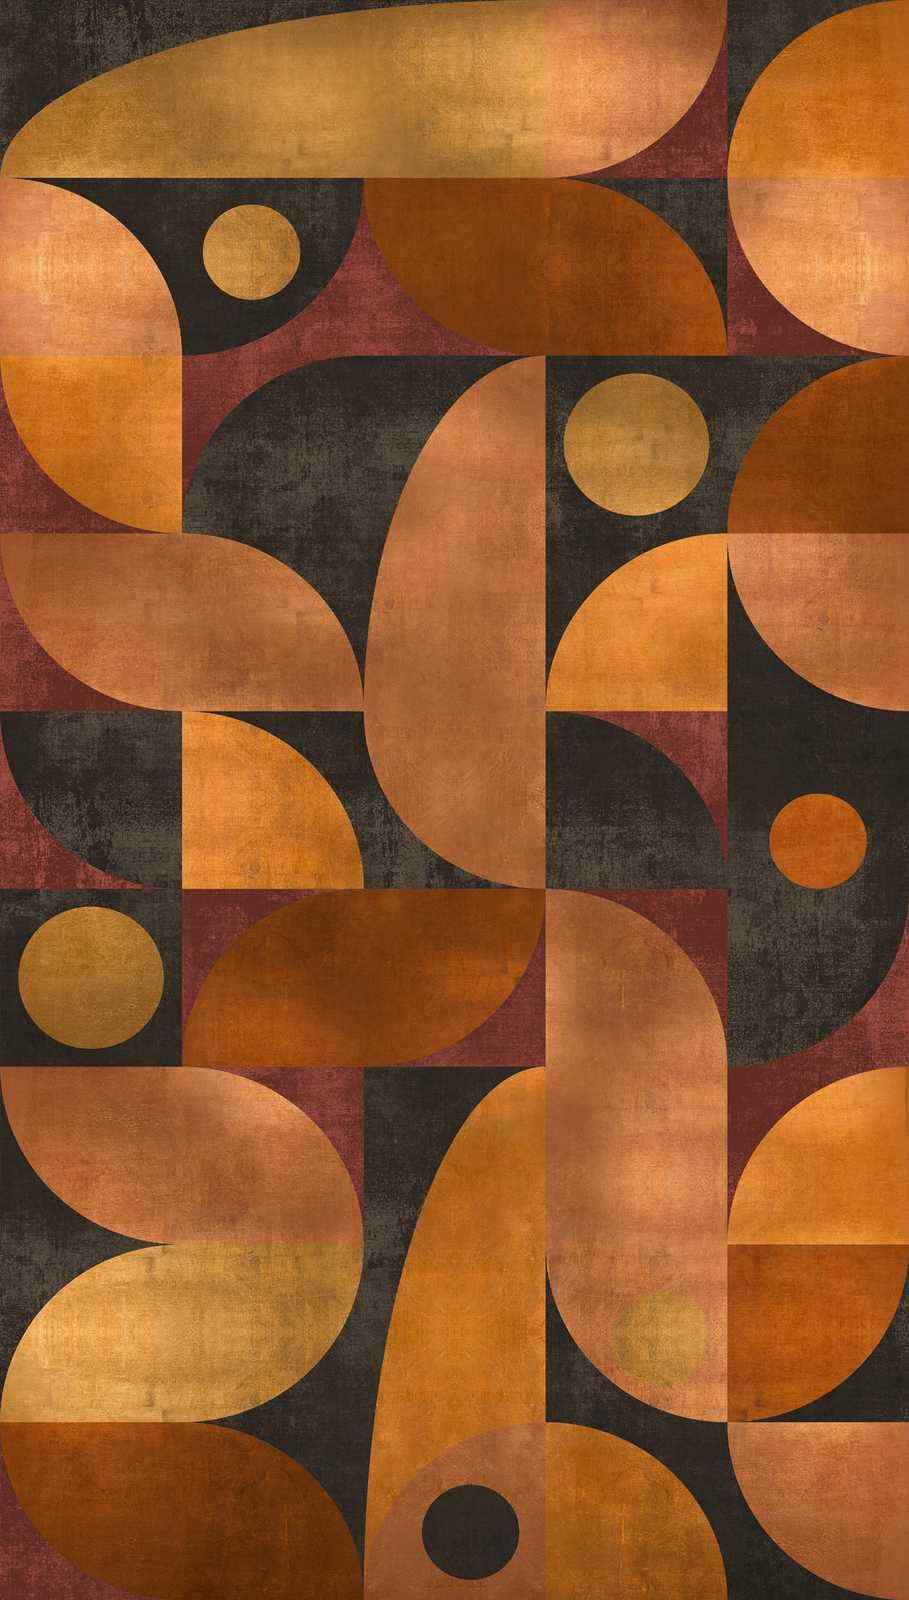             Papel pintado no tejido en tonos cálidos con motivos gráficos redondos - naranja, marrón, rojo
        